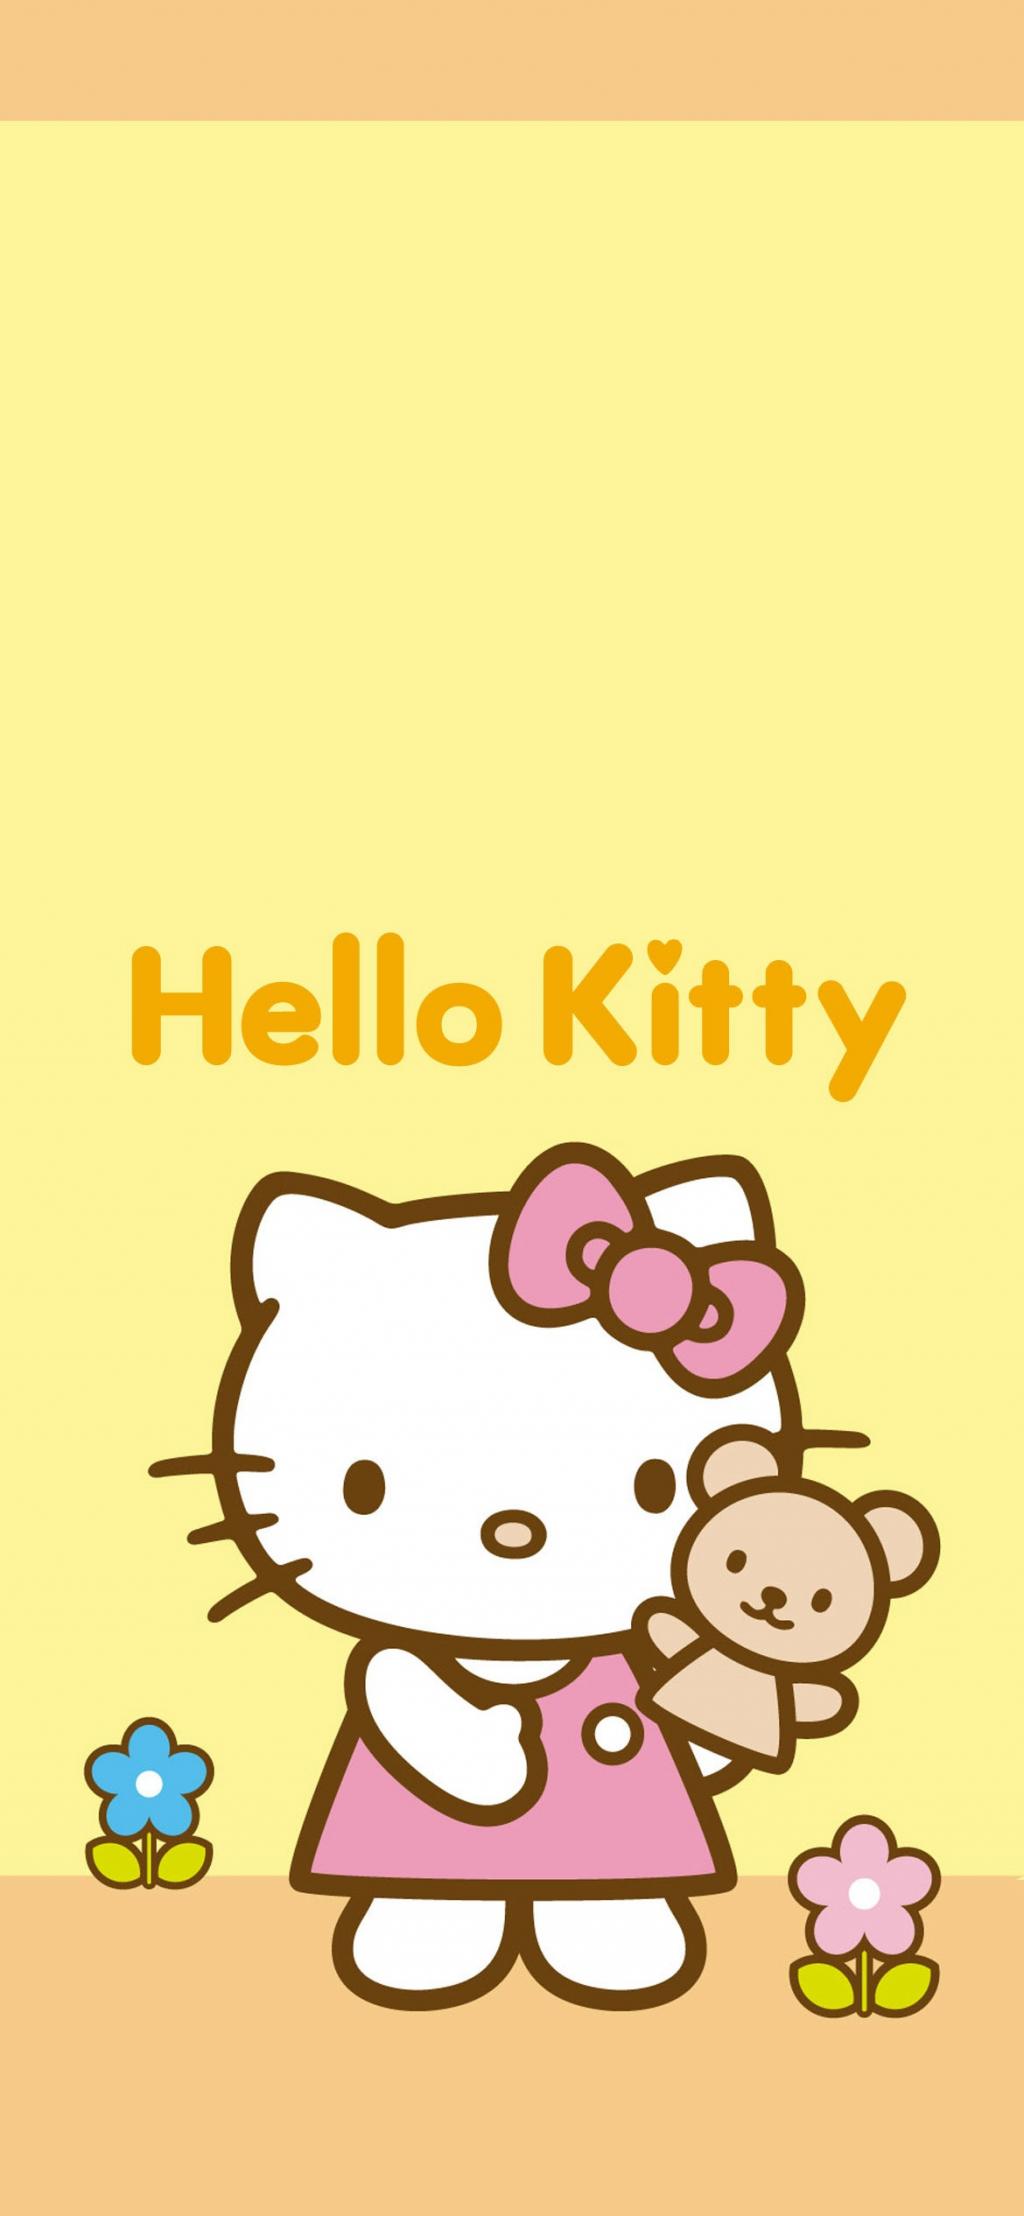 Hello kitty可爱图片